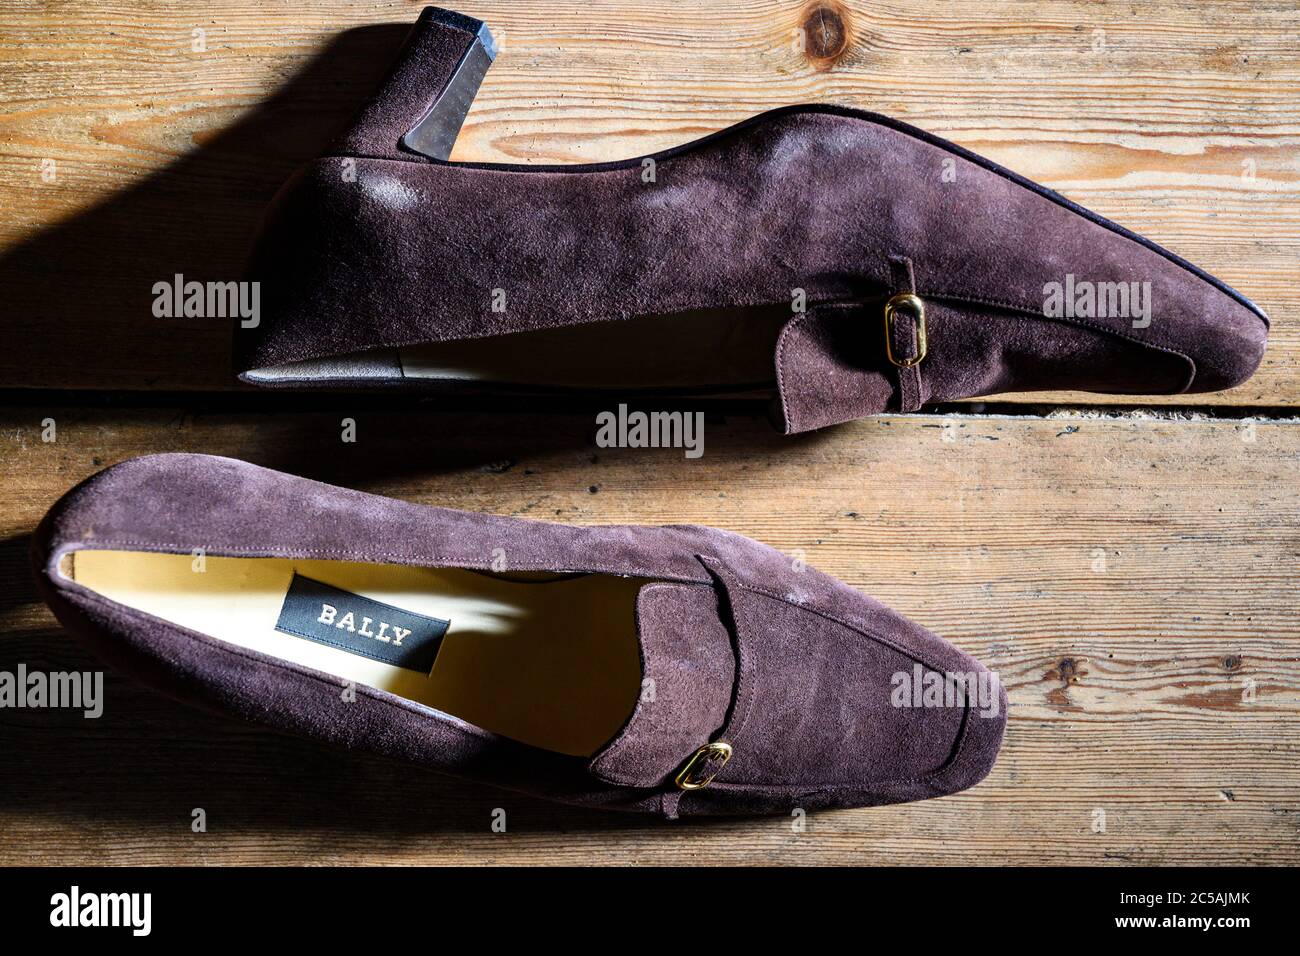 Bally shoes Banque de photographies et d'images à haute résolution - Alamy